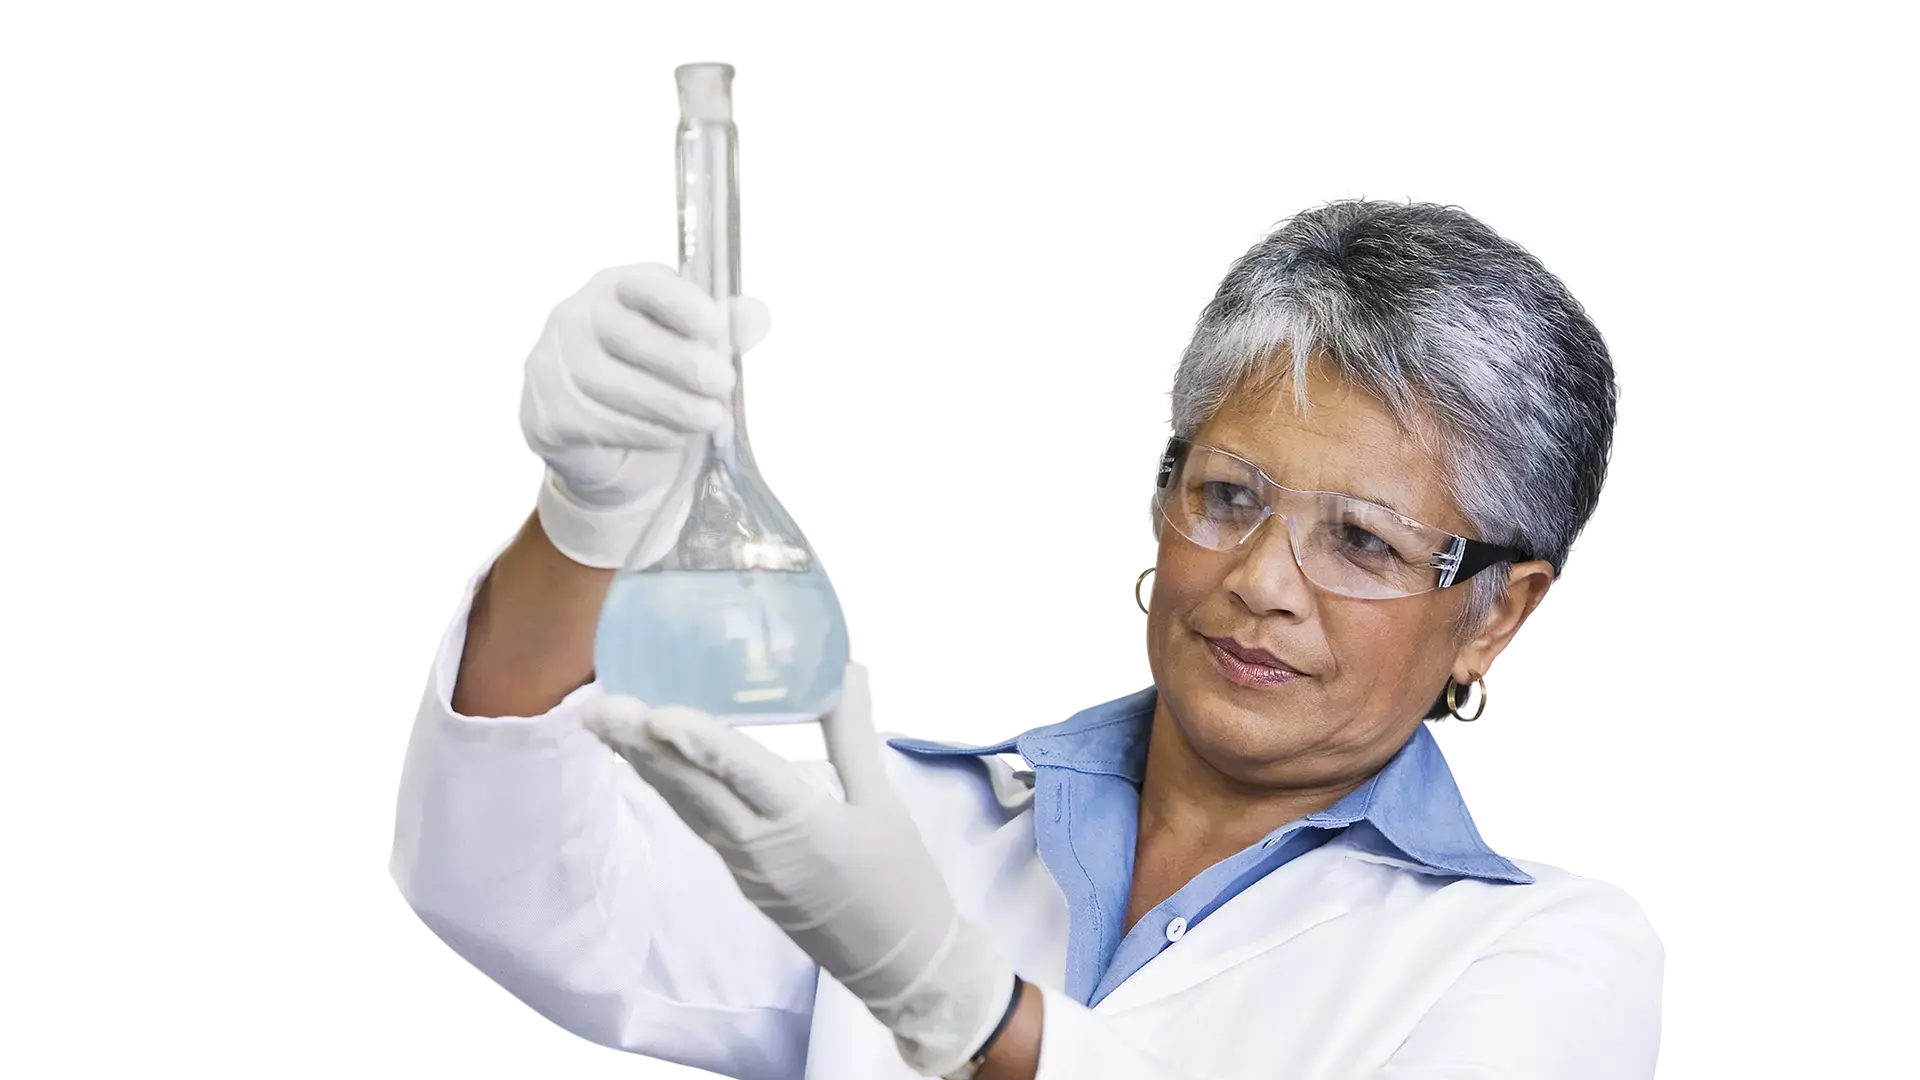 Wetenschapper kijkt naar bekerglas met chemicaliën